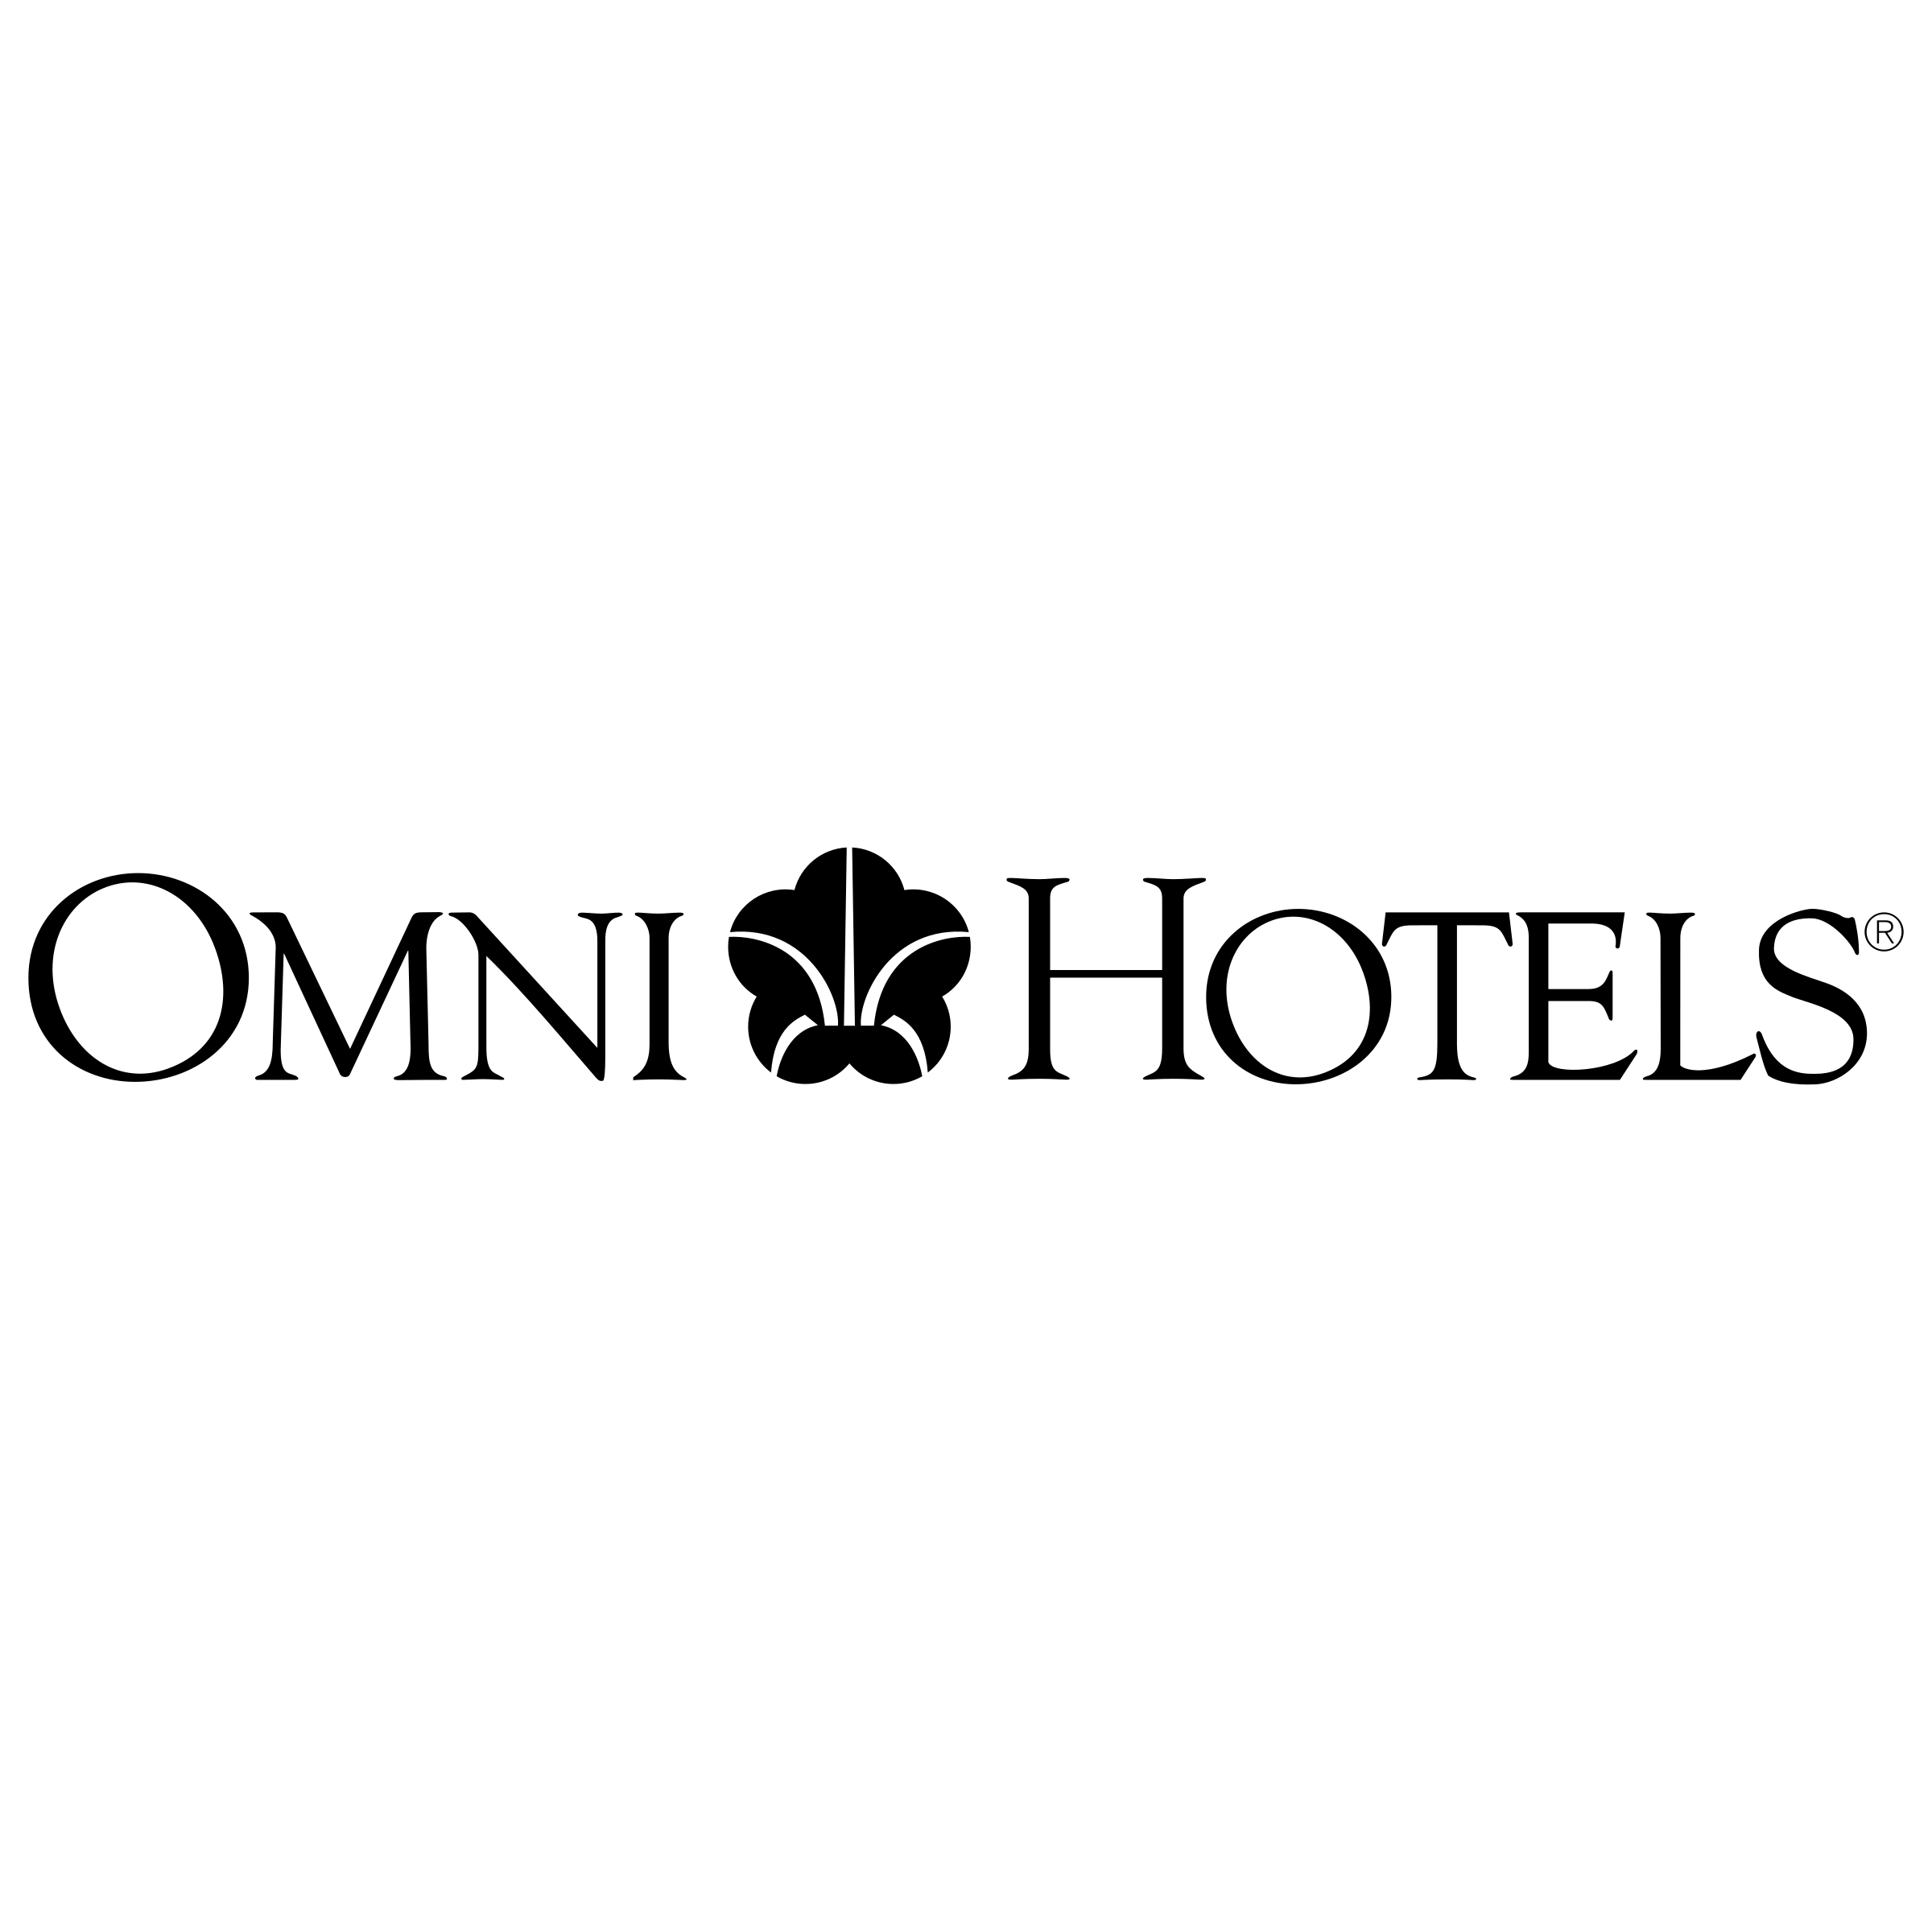 Omni Logo - Omni Hotels Logo PNG Transparent & SVG Vector - Freebie Supply